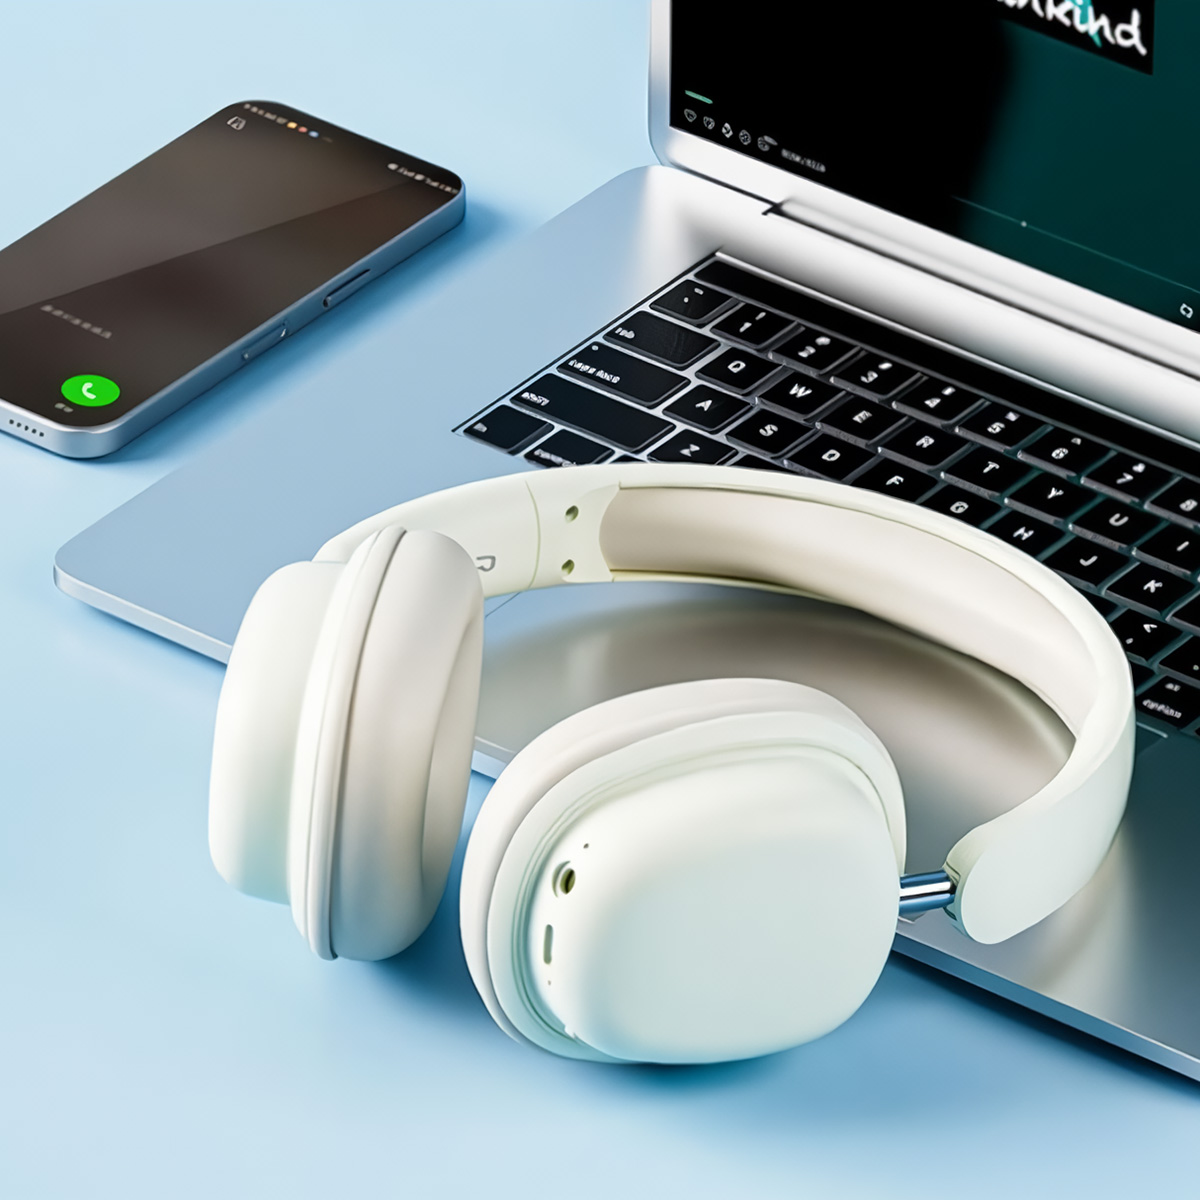 Auriculares Bluetooth Klack Sy-t1 Plegables Micrófono 20h De Autonomía